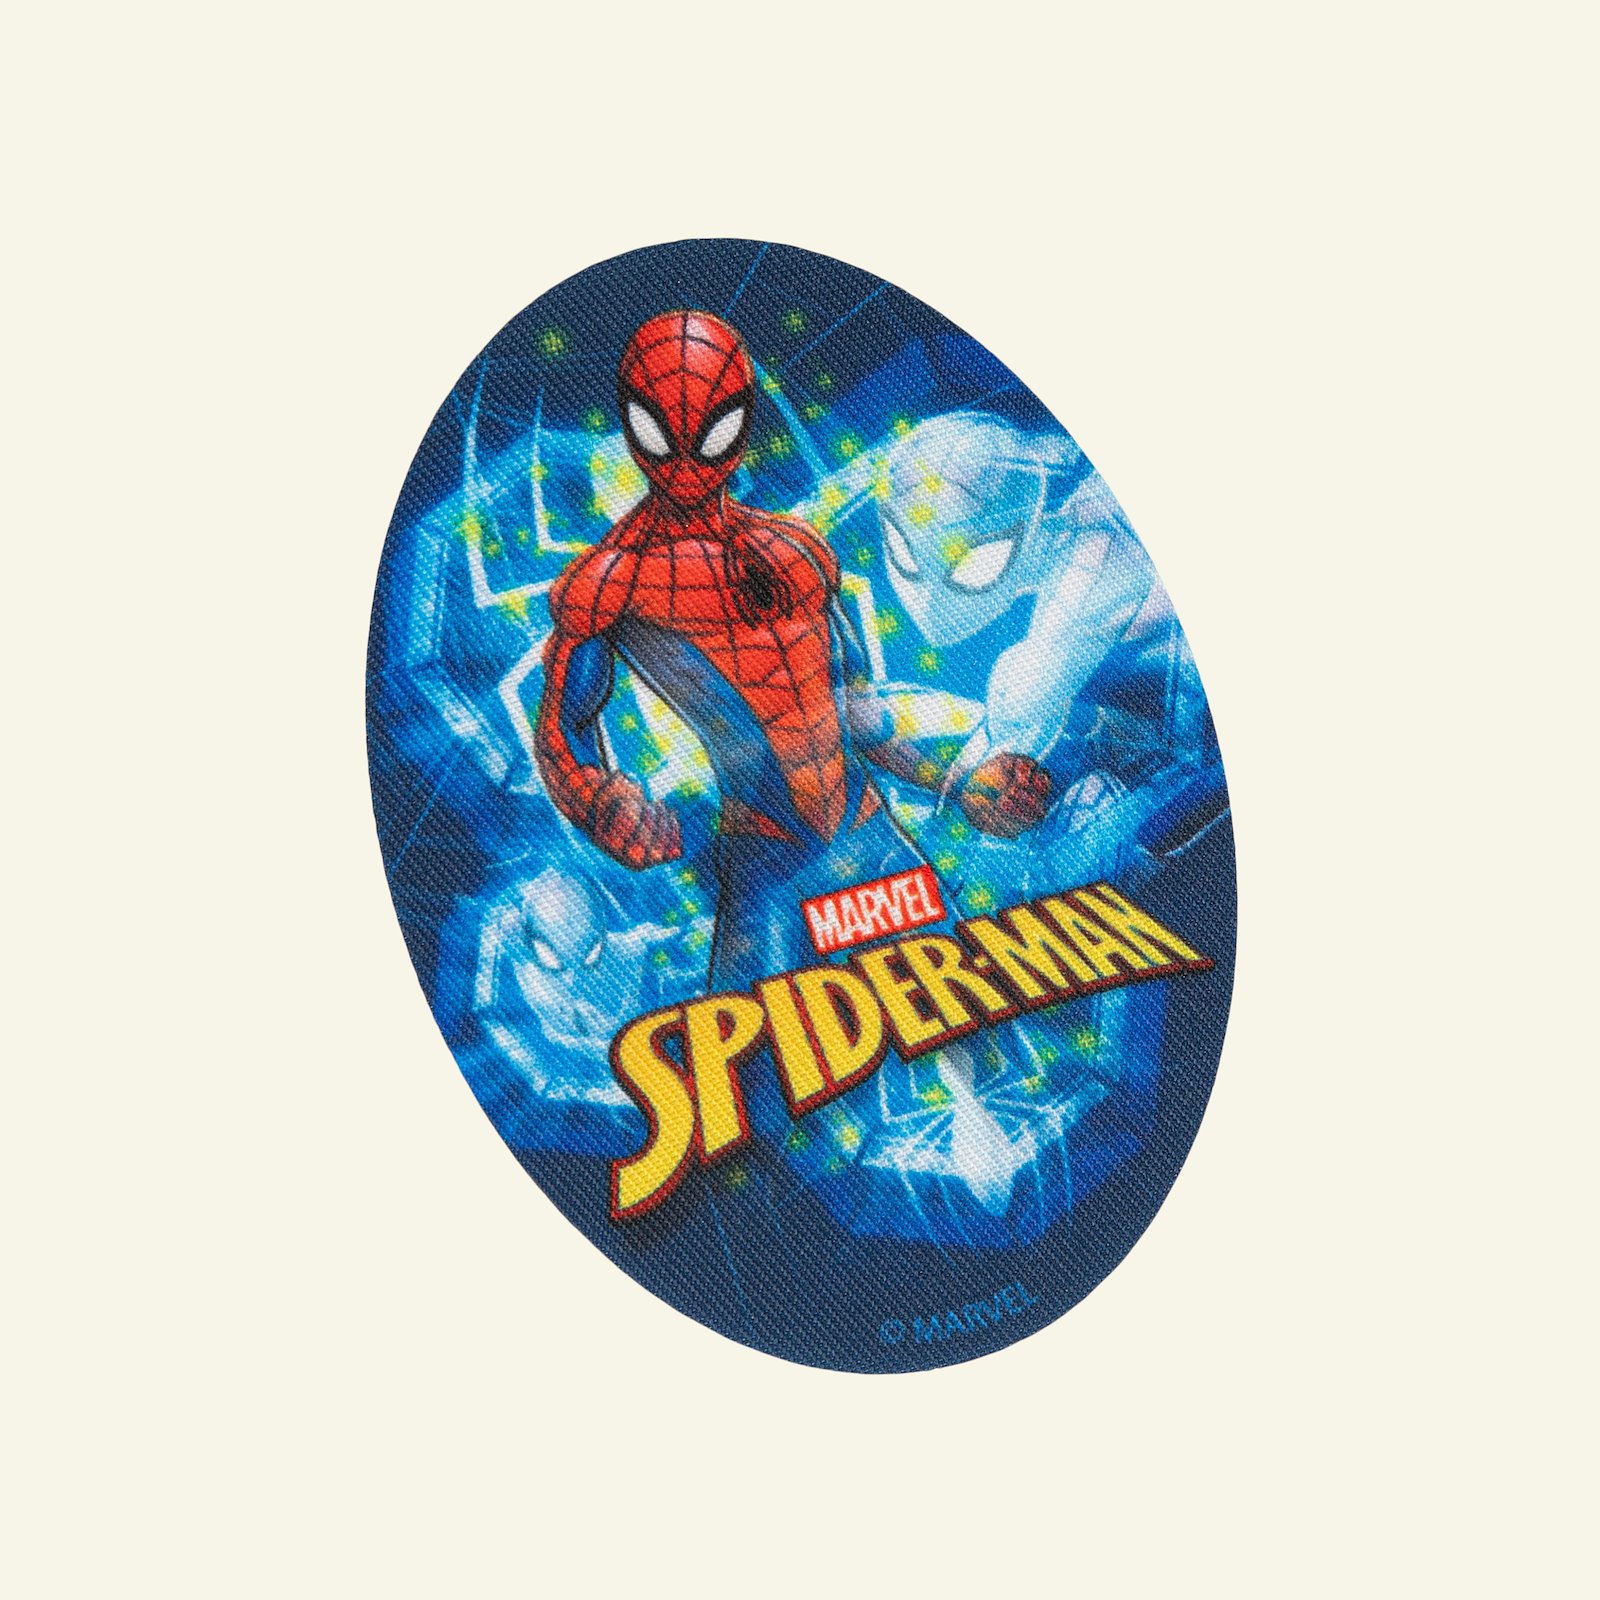 Aufnäher Spiderman 110x80mm blau/rot 1St 24951_pack